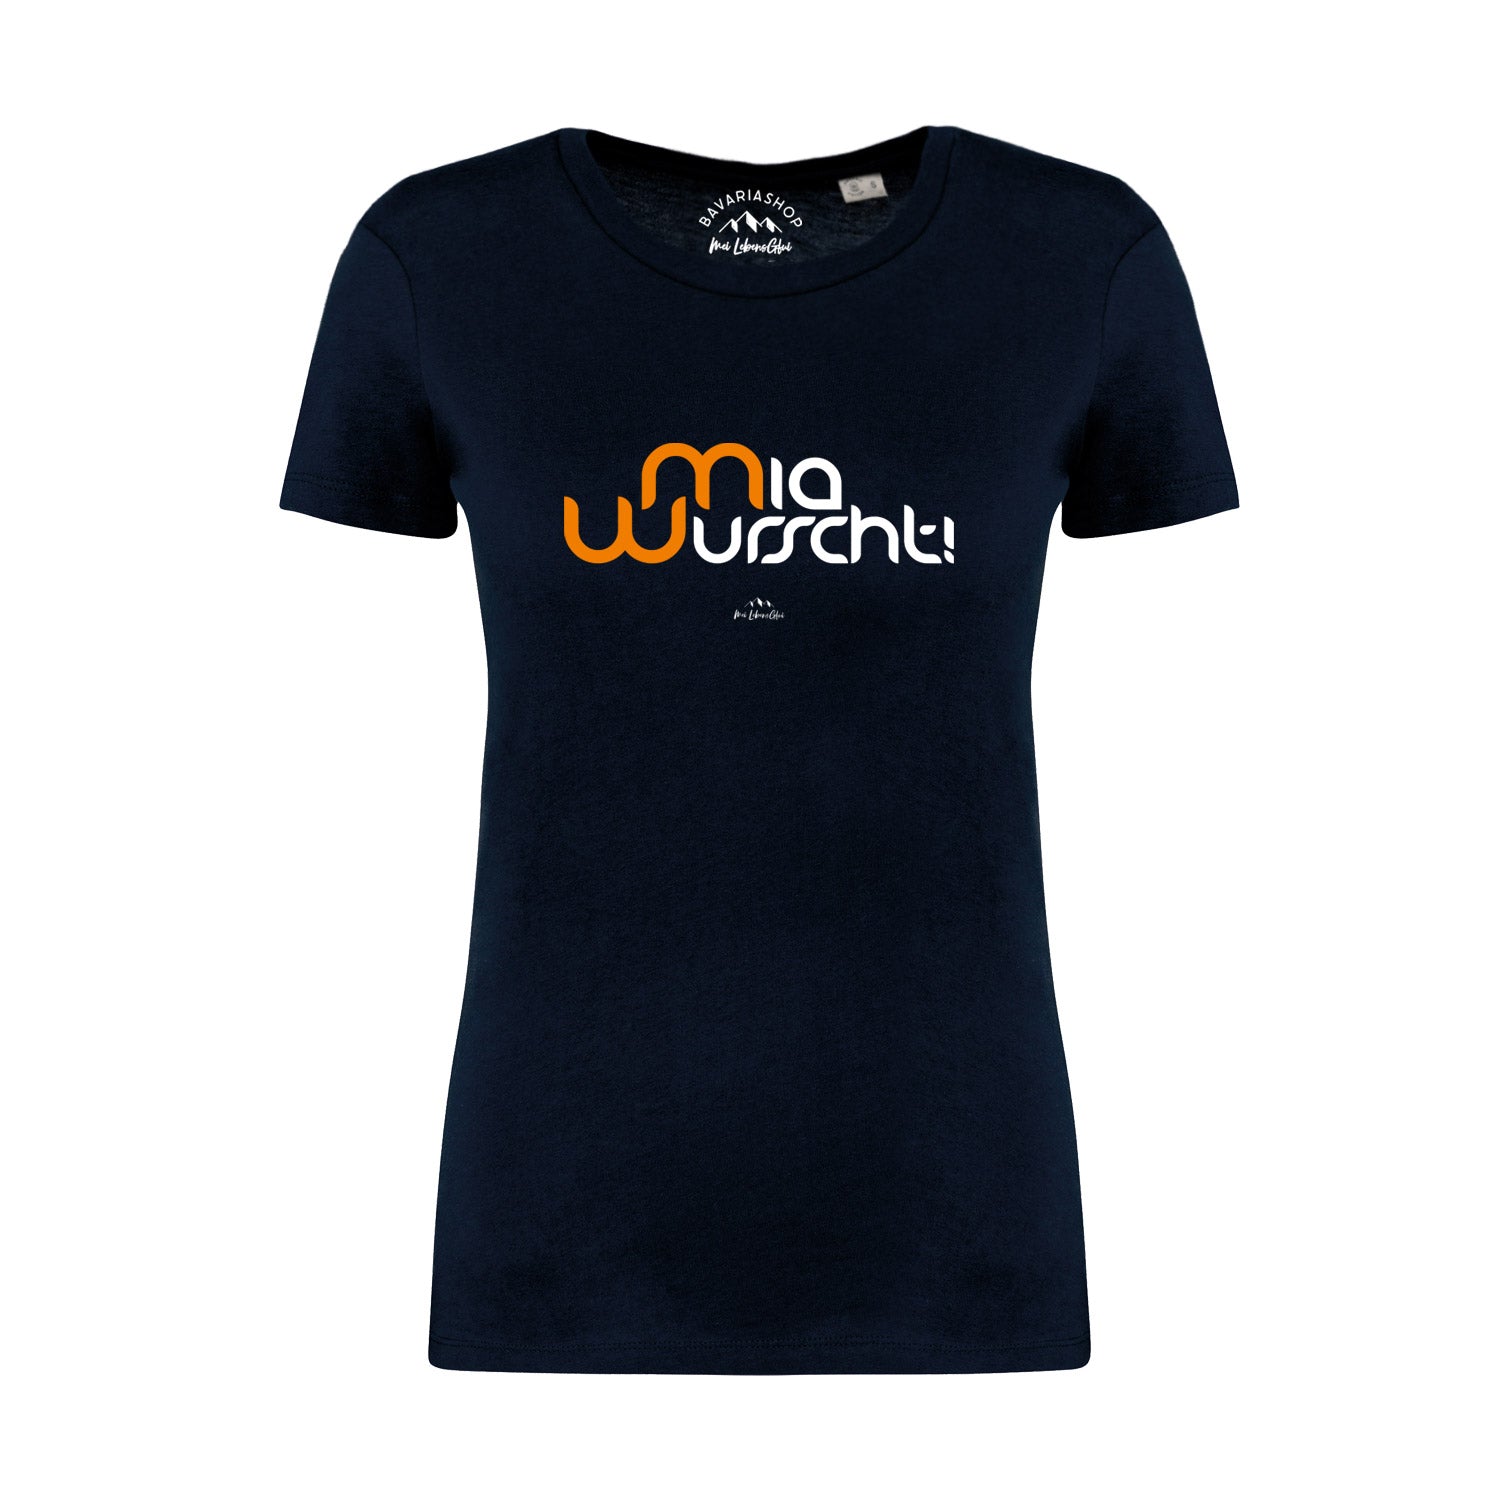 Damen T-Shirt "Mia Wurscht"